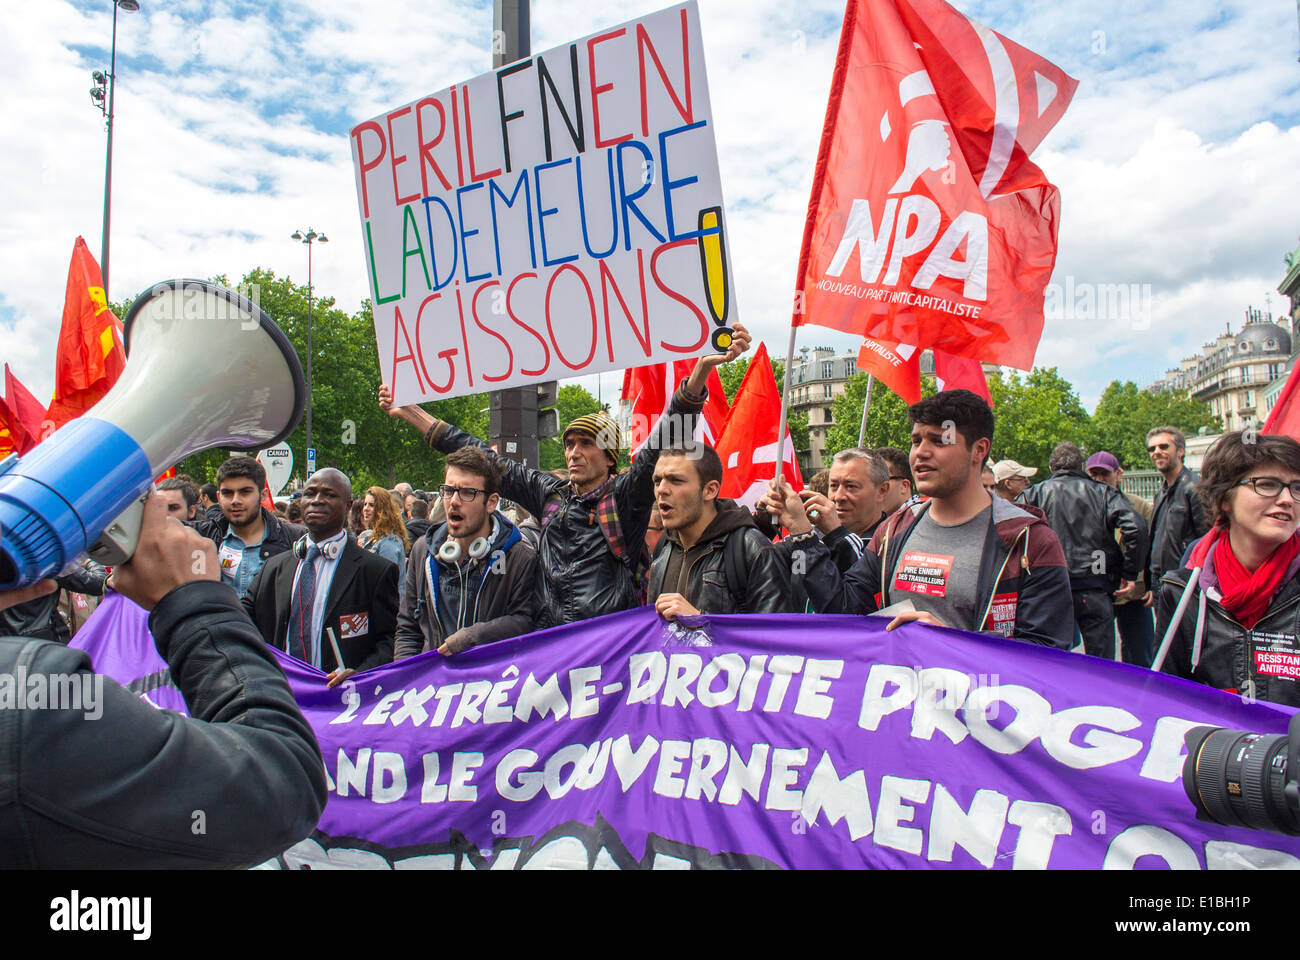 Paris, France, démonstration anti-extrême droite par des étudiants adolescents français, des jeunes manifestants, des gens en colère grande foule, scène, mégaphone de démonstration Banque D'Images